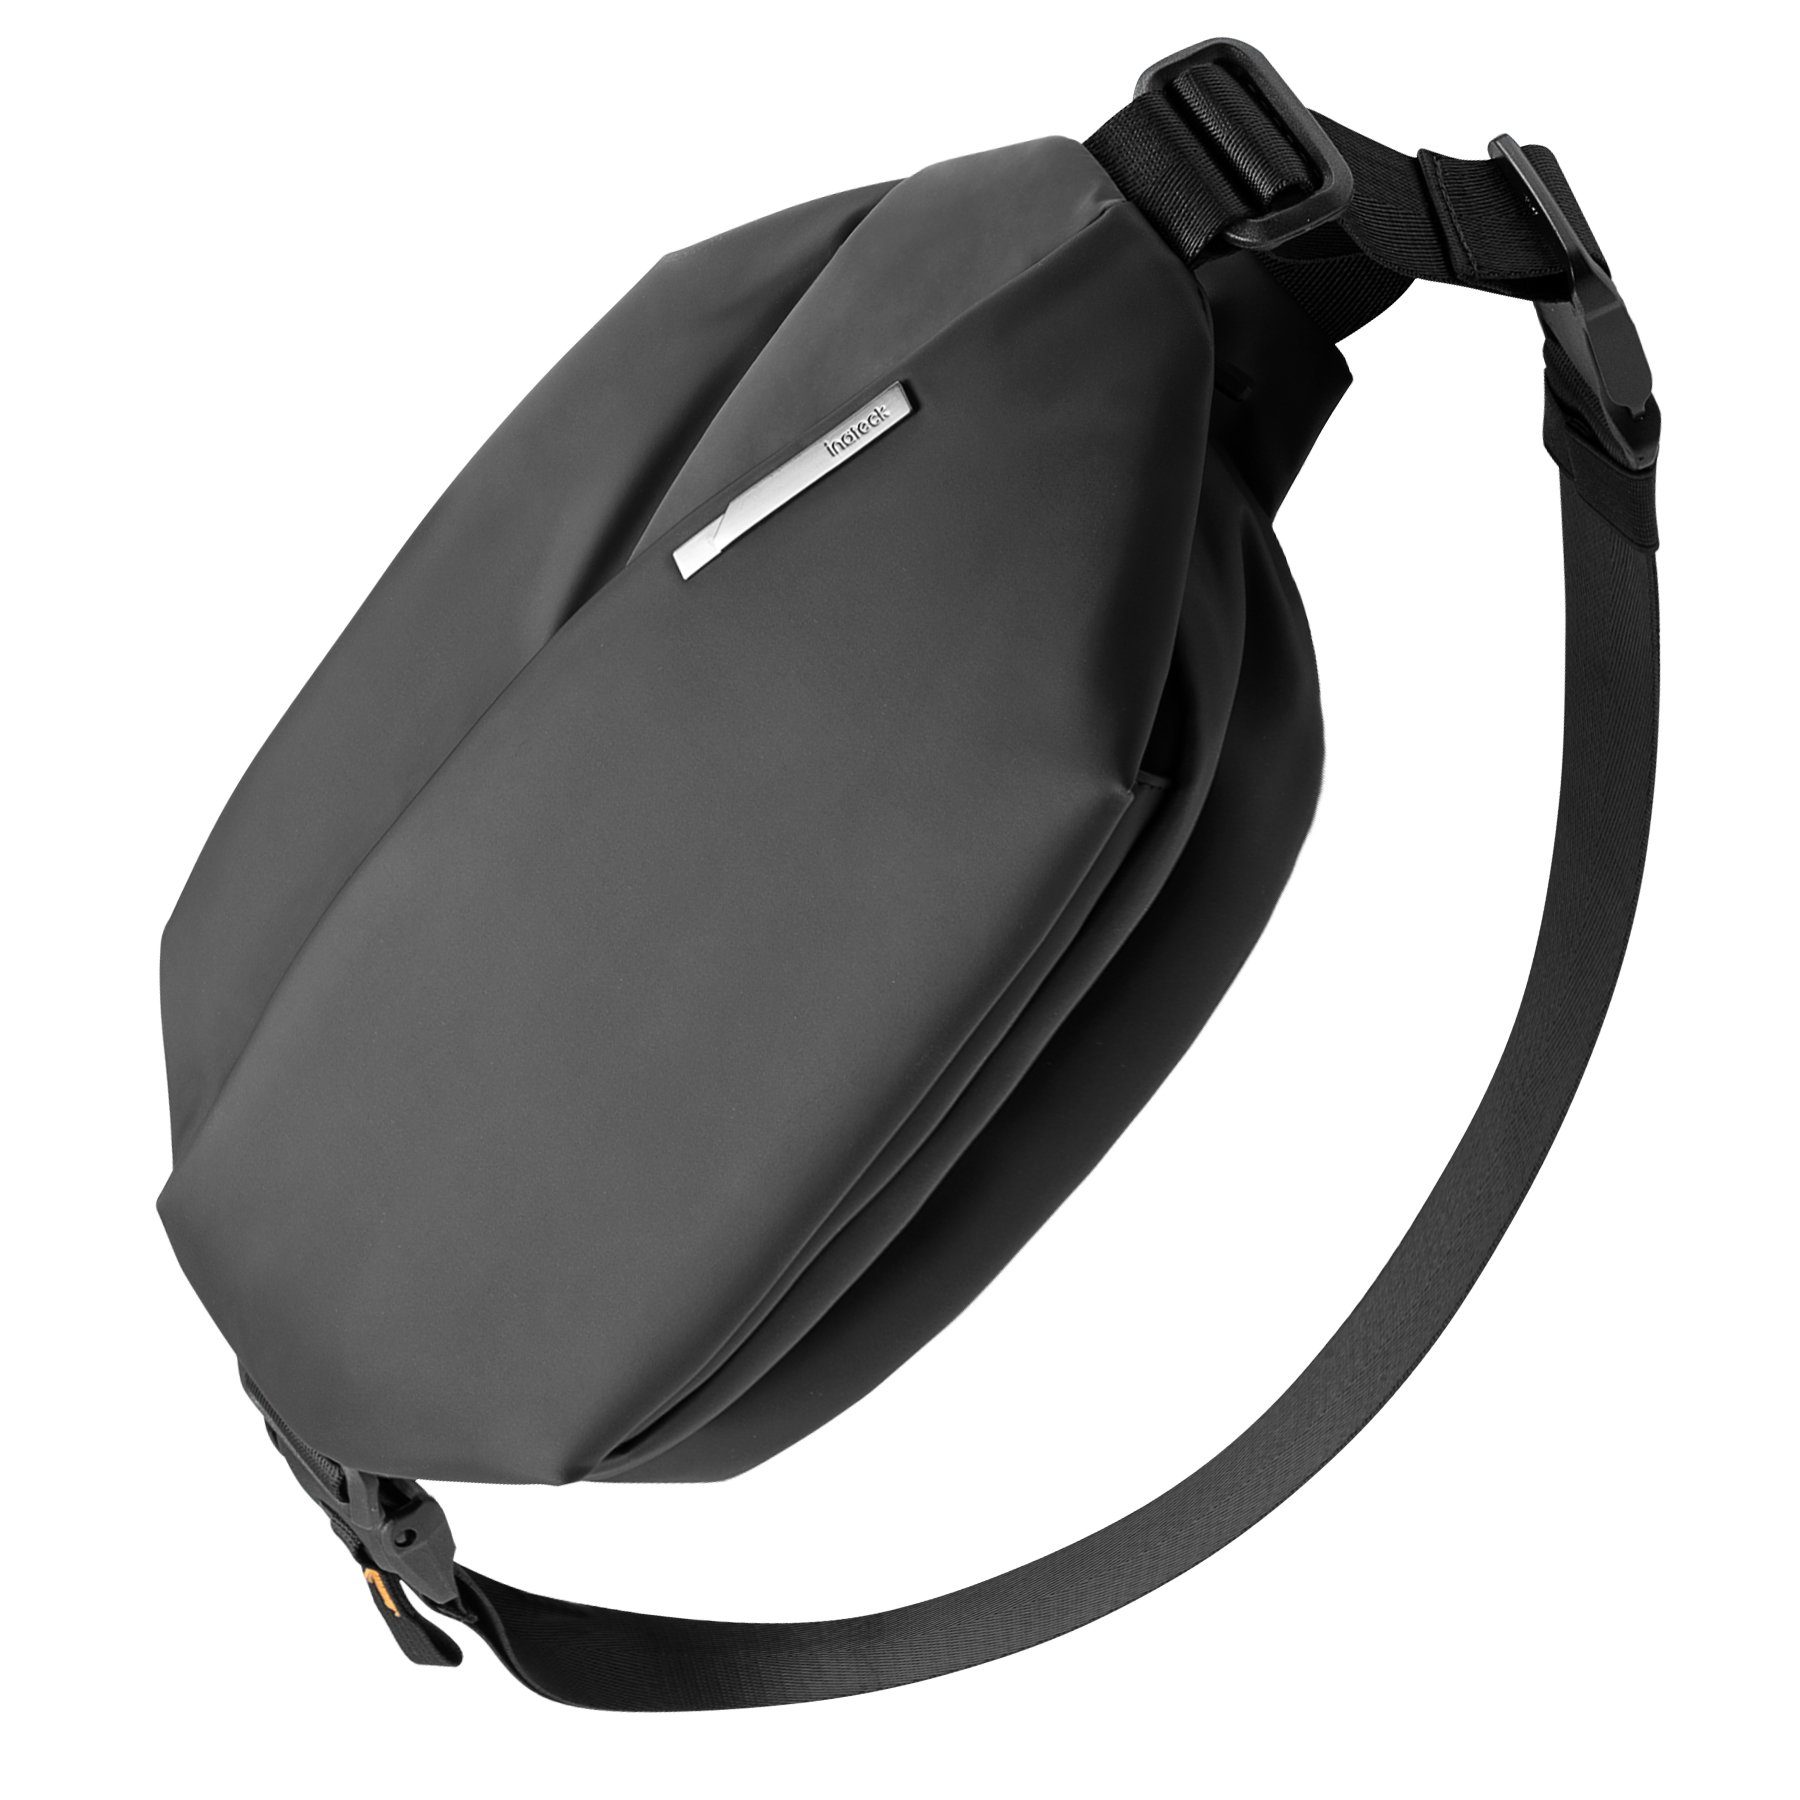 Inateck Gürteltasche Sling Bag, stylische Crossbody Bag mit verstellbarem Schultergurt, spritzwassergeschützt und abriebfest | Gürteltaschen